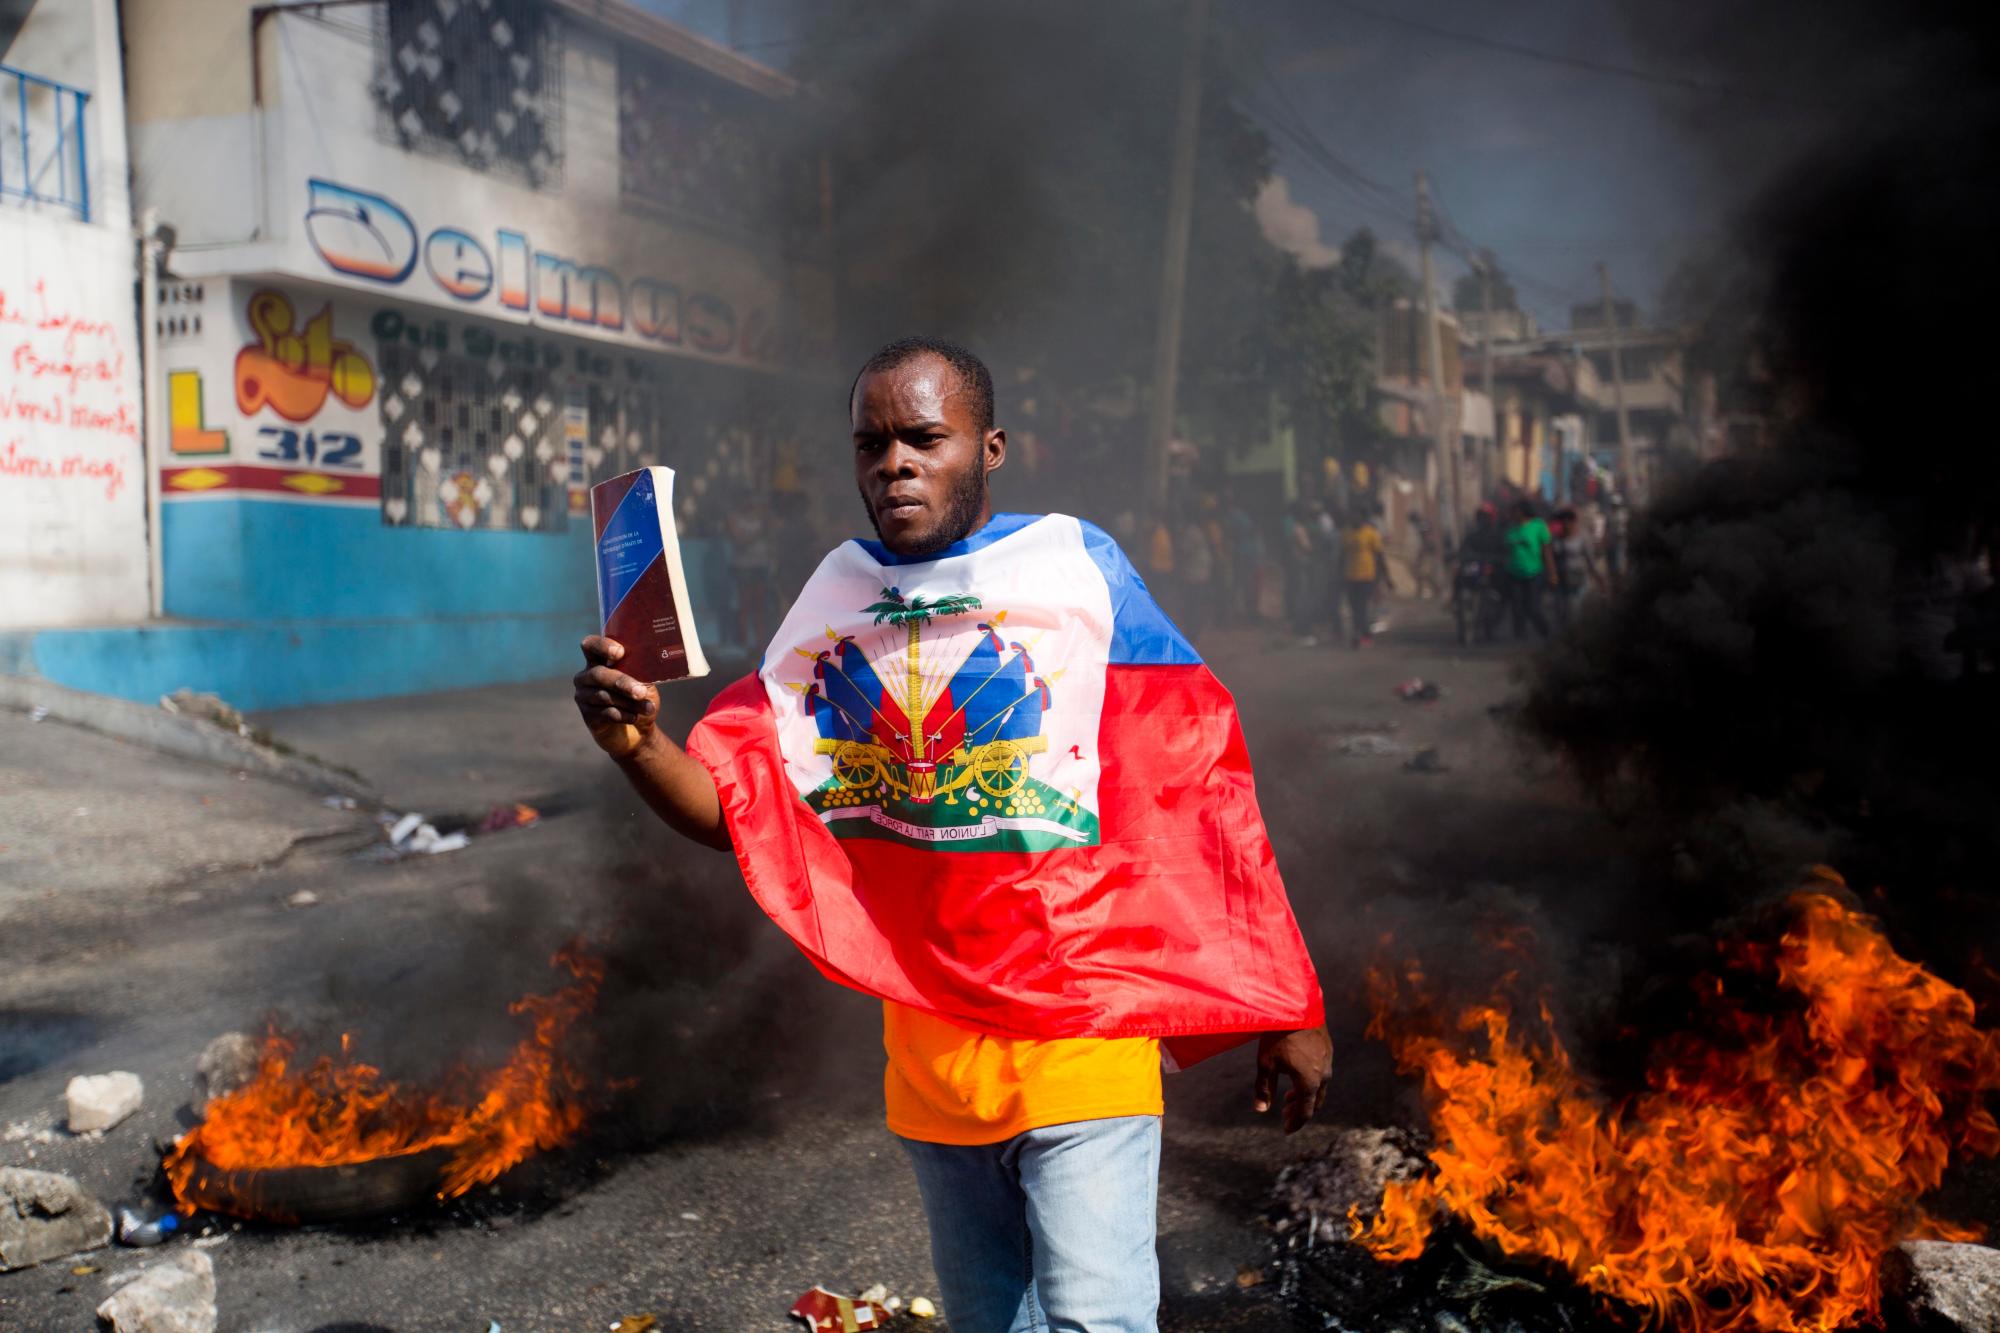 Un manifestante envuelto en la bandera haitiana, sostiene una copia de la constitución haitiana, durante una protesta para exigir la renuncia del presidente Jovenel Moise y exigir saber cómo los fondos de Petro Caribe han sido utilizados por las administraciones actuales y pasadas, en Port-au. -Prince, Haití, jueves 7 de febrero de 2019. Gran parte del apoyo financiero para ayudar a Haití a reconstruirse después del terremoto de 2010 proviene del fondo venezolano Petro Caribe, un pacto de 2005 que otorga a los proveedores financiamiento por debajo del mercado para el petróleo y está bajo control. del gobierno central.